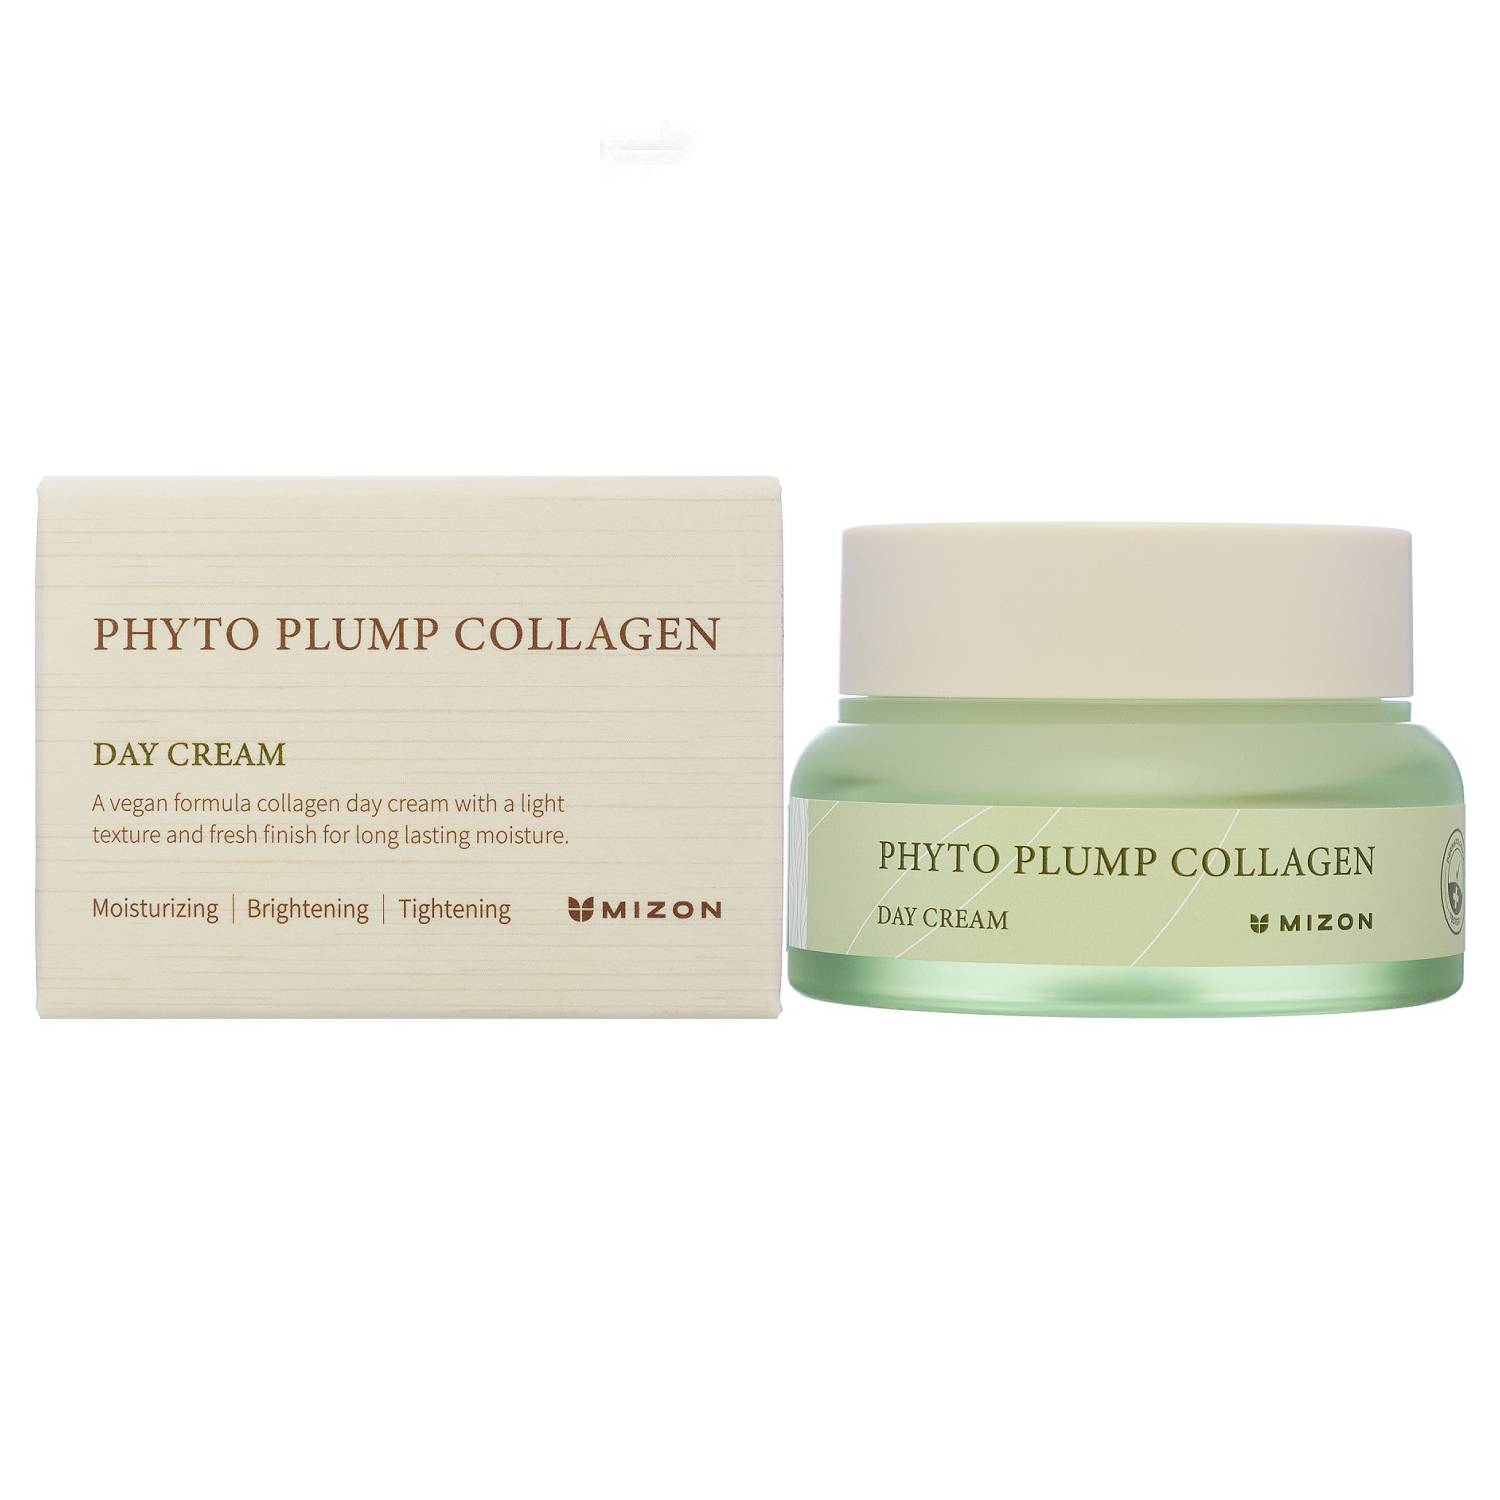 Mizon Дневной крем с фитоколлагеном для лица Day Cream, 50 мл (Mizon, Phyto Plump Collagen)